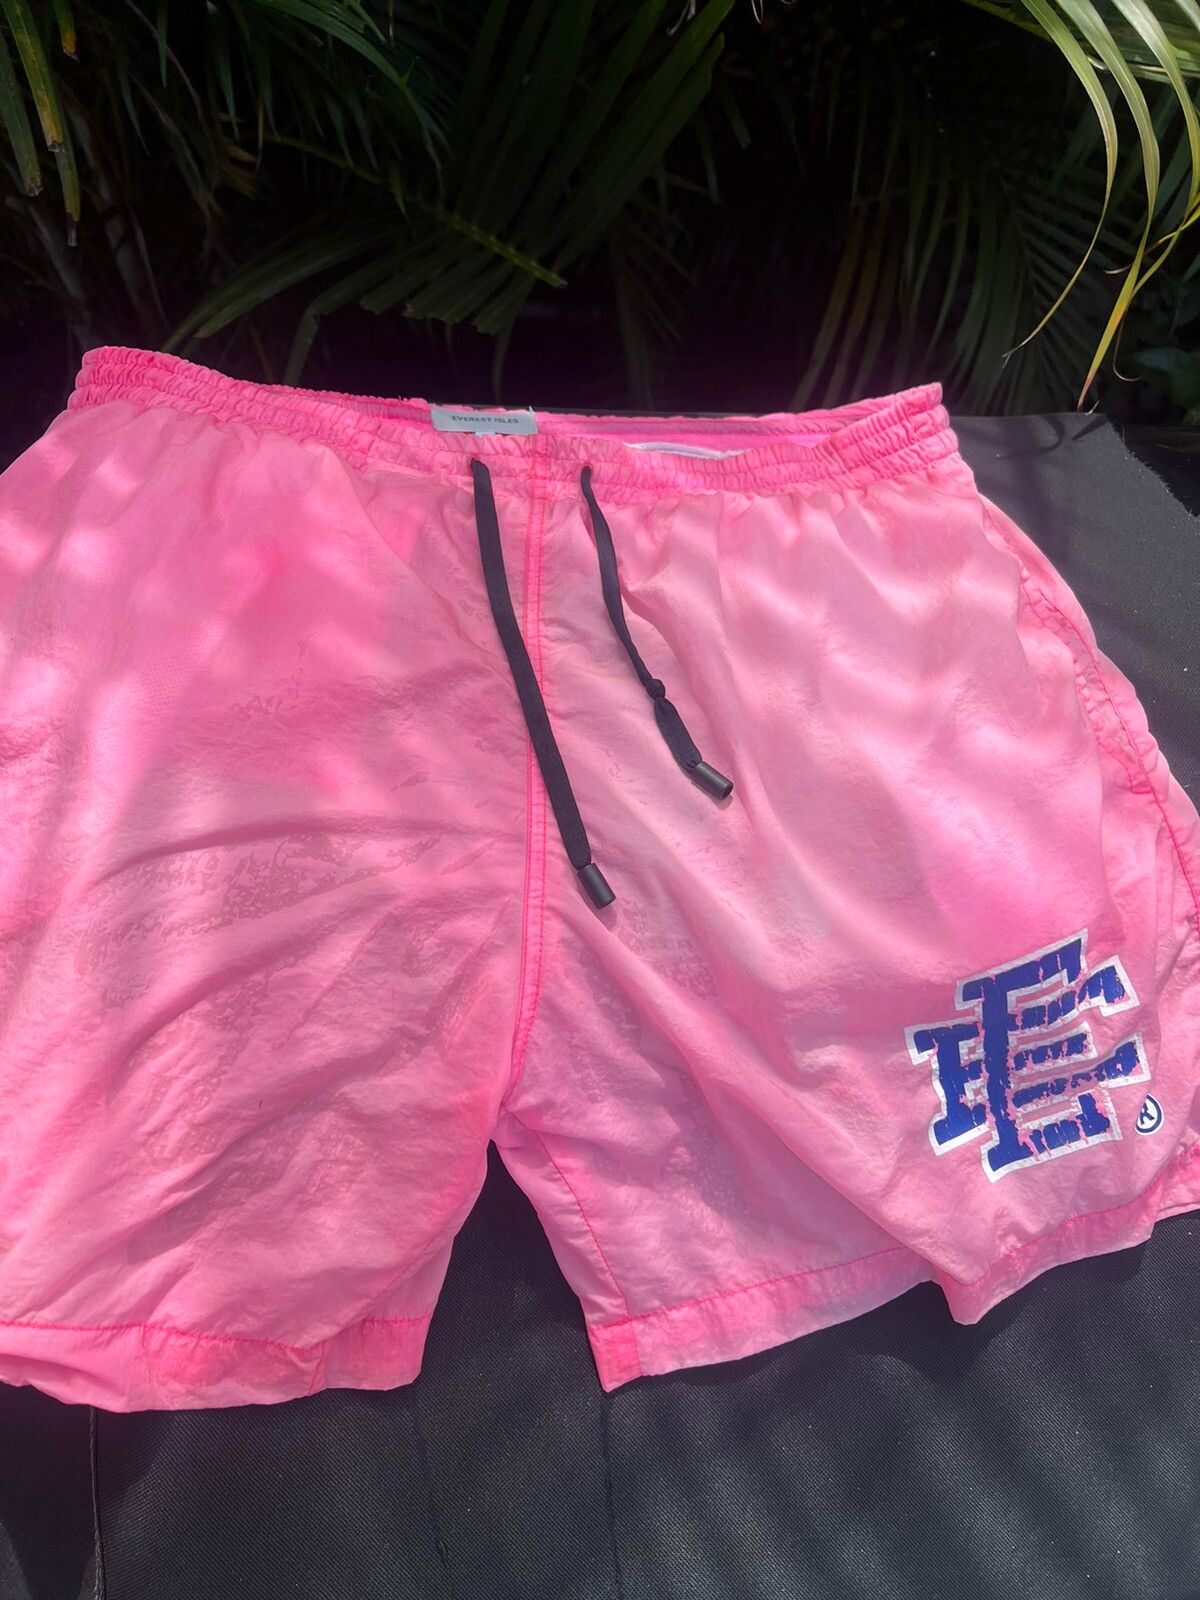 Eric Emanuel Eric Emanuel X Everest Isles pink bathing suit medium